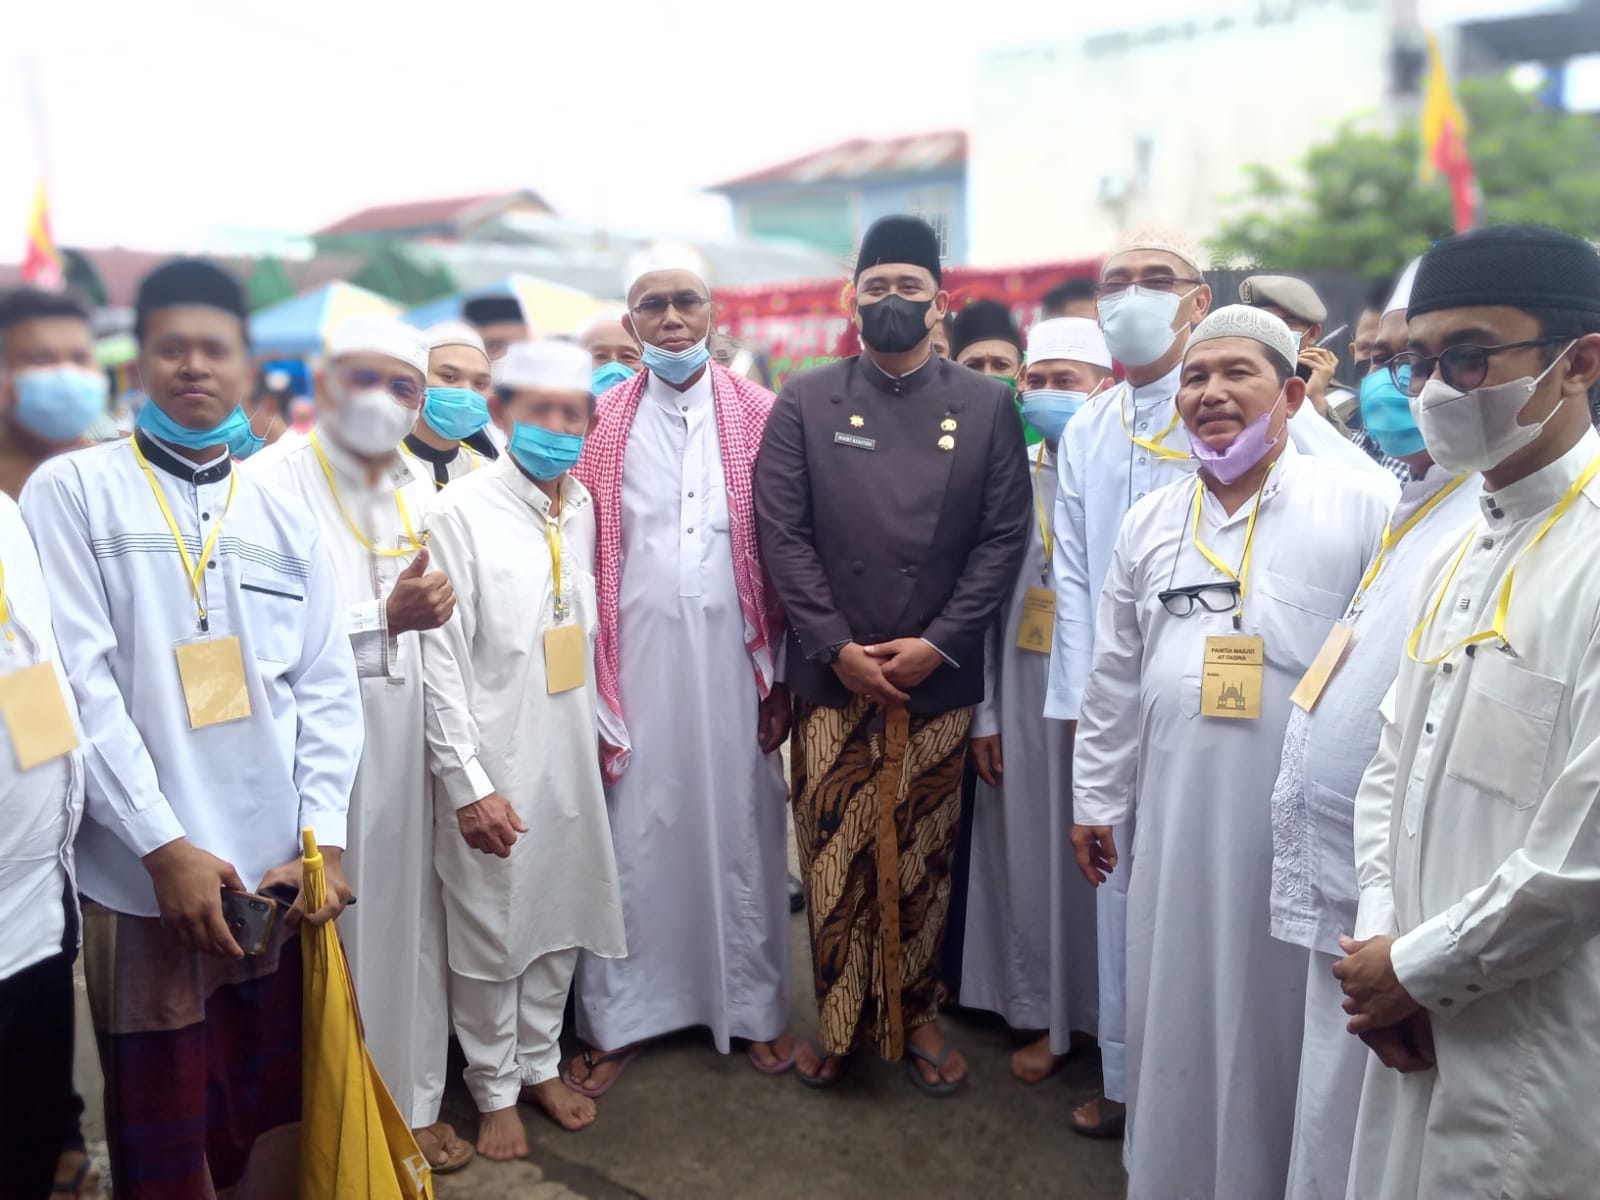 Walikota Medan Muhammad Bobby Afif Nasution, SE, MM beserta rombongan mengadakan safari Jum'at di Mesjid At-Taqwa (foto: Rudi Hartono)